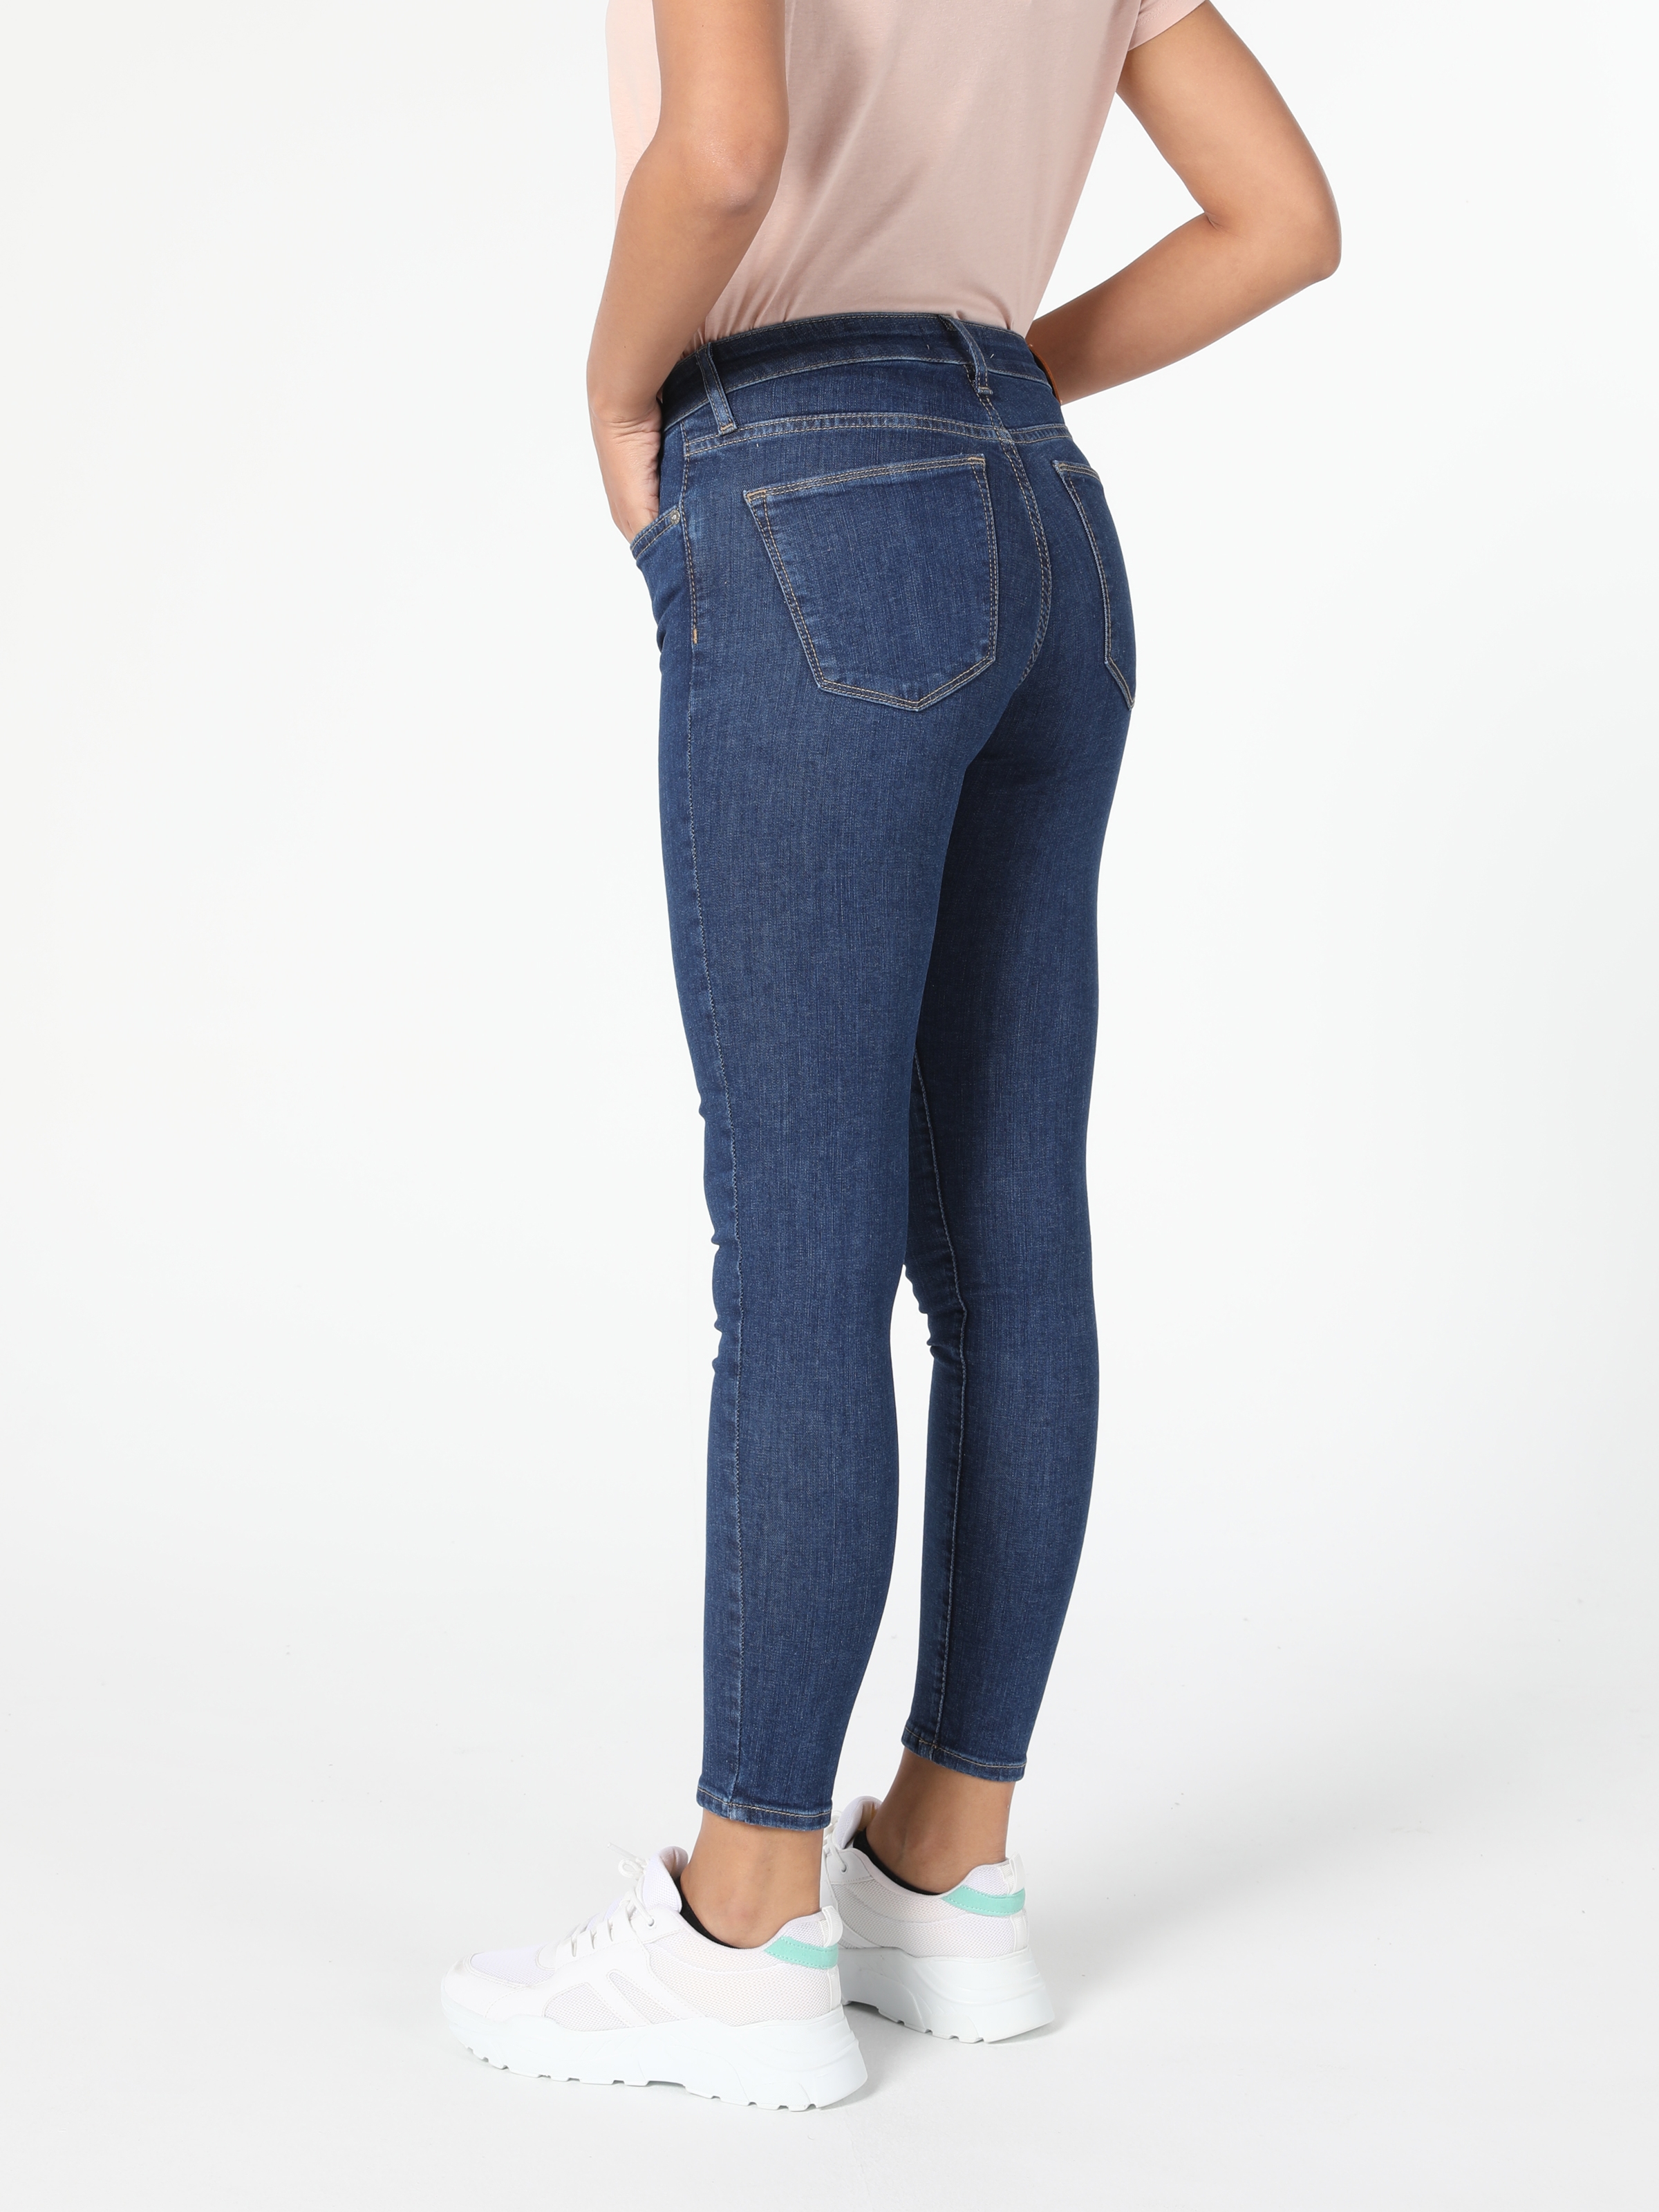 Afișați detalii pentru Pantaloni De Dama Denim Super Slim Fit 759 LARA